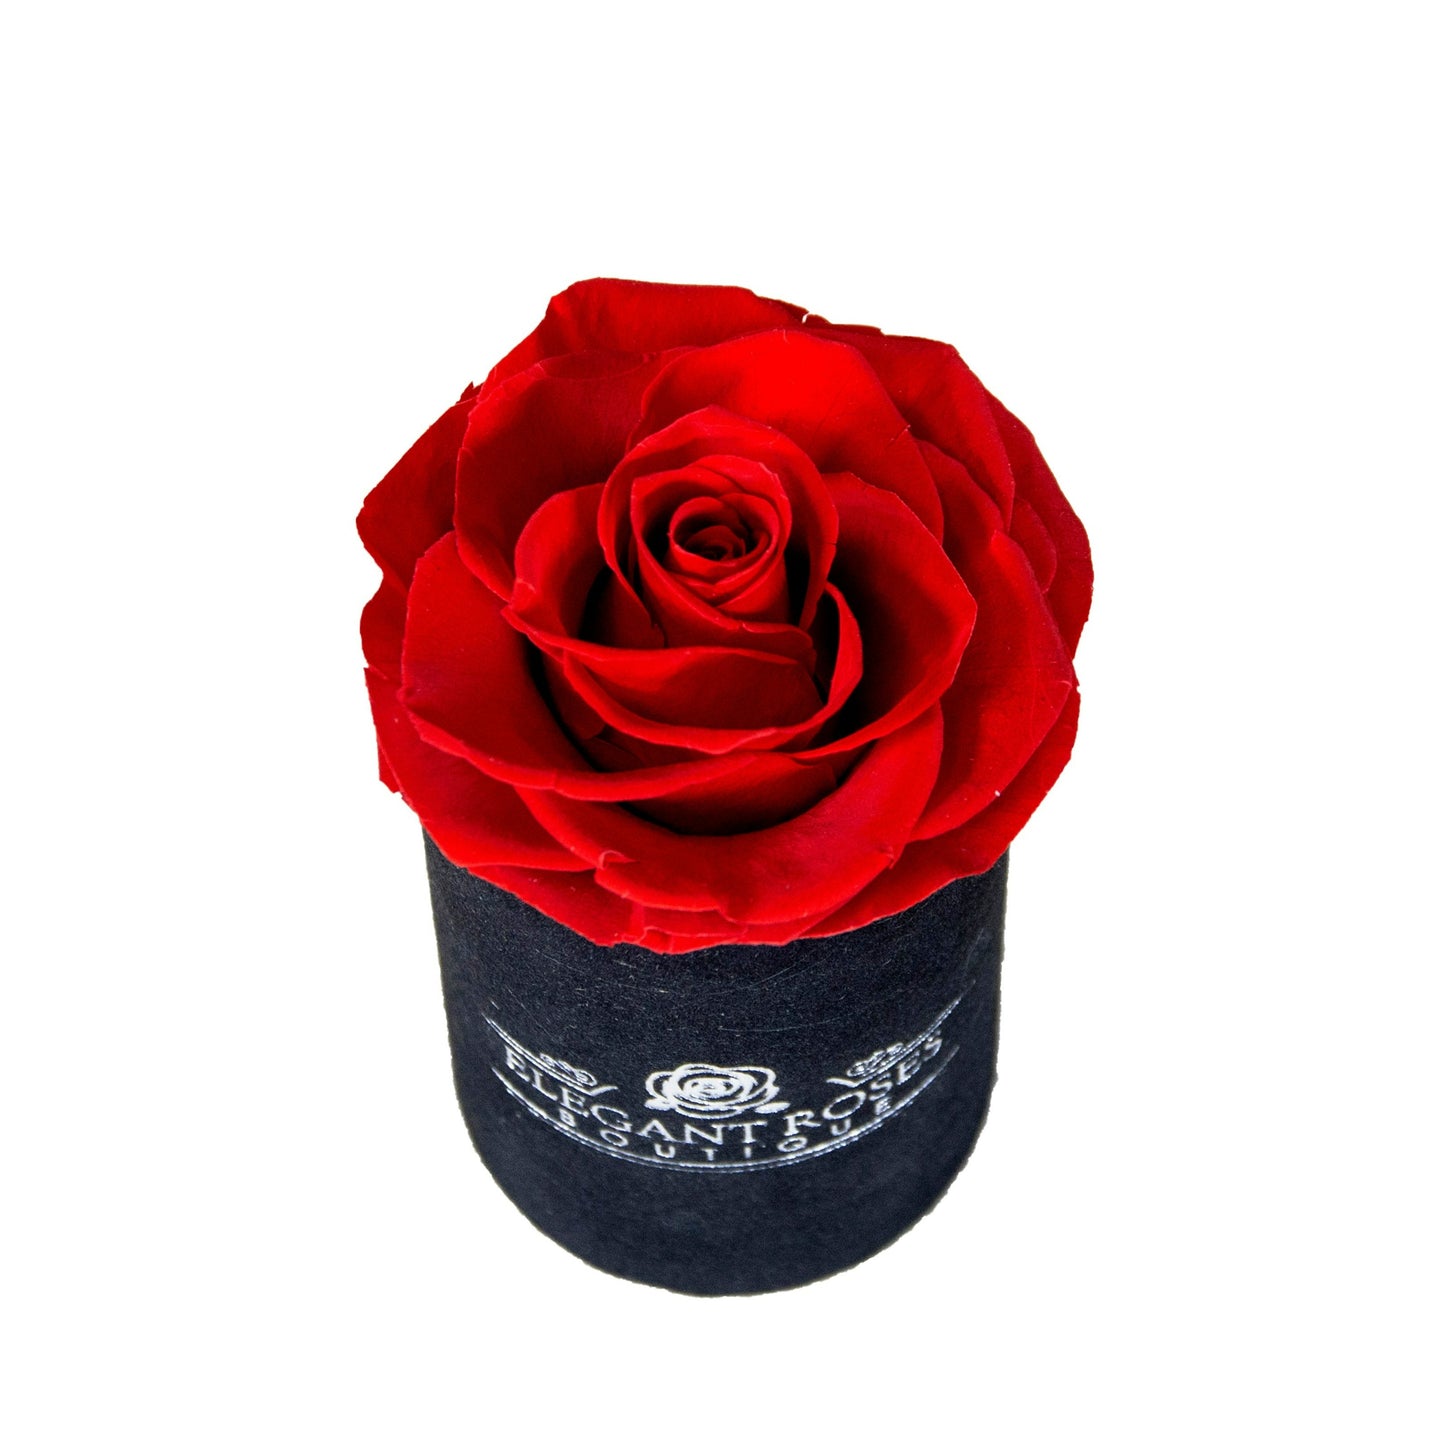 Ainyrose Mini Forever Rose Box 1 pcs